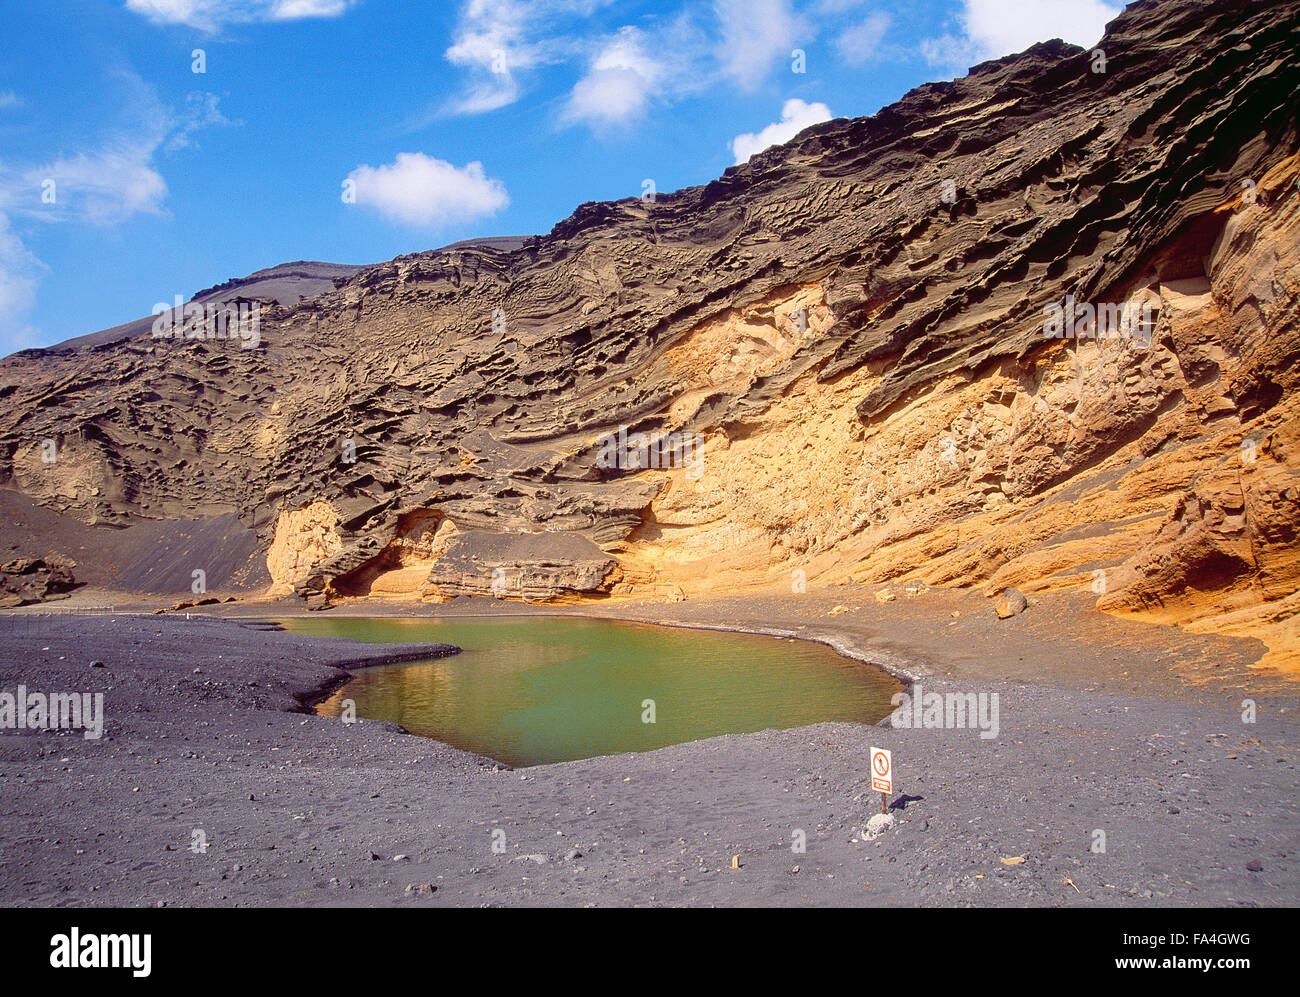 Charco de Los Clicos. El Golfo, Lanzarote island, Canary Islands, Spain. Stock Photo